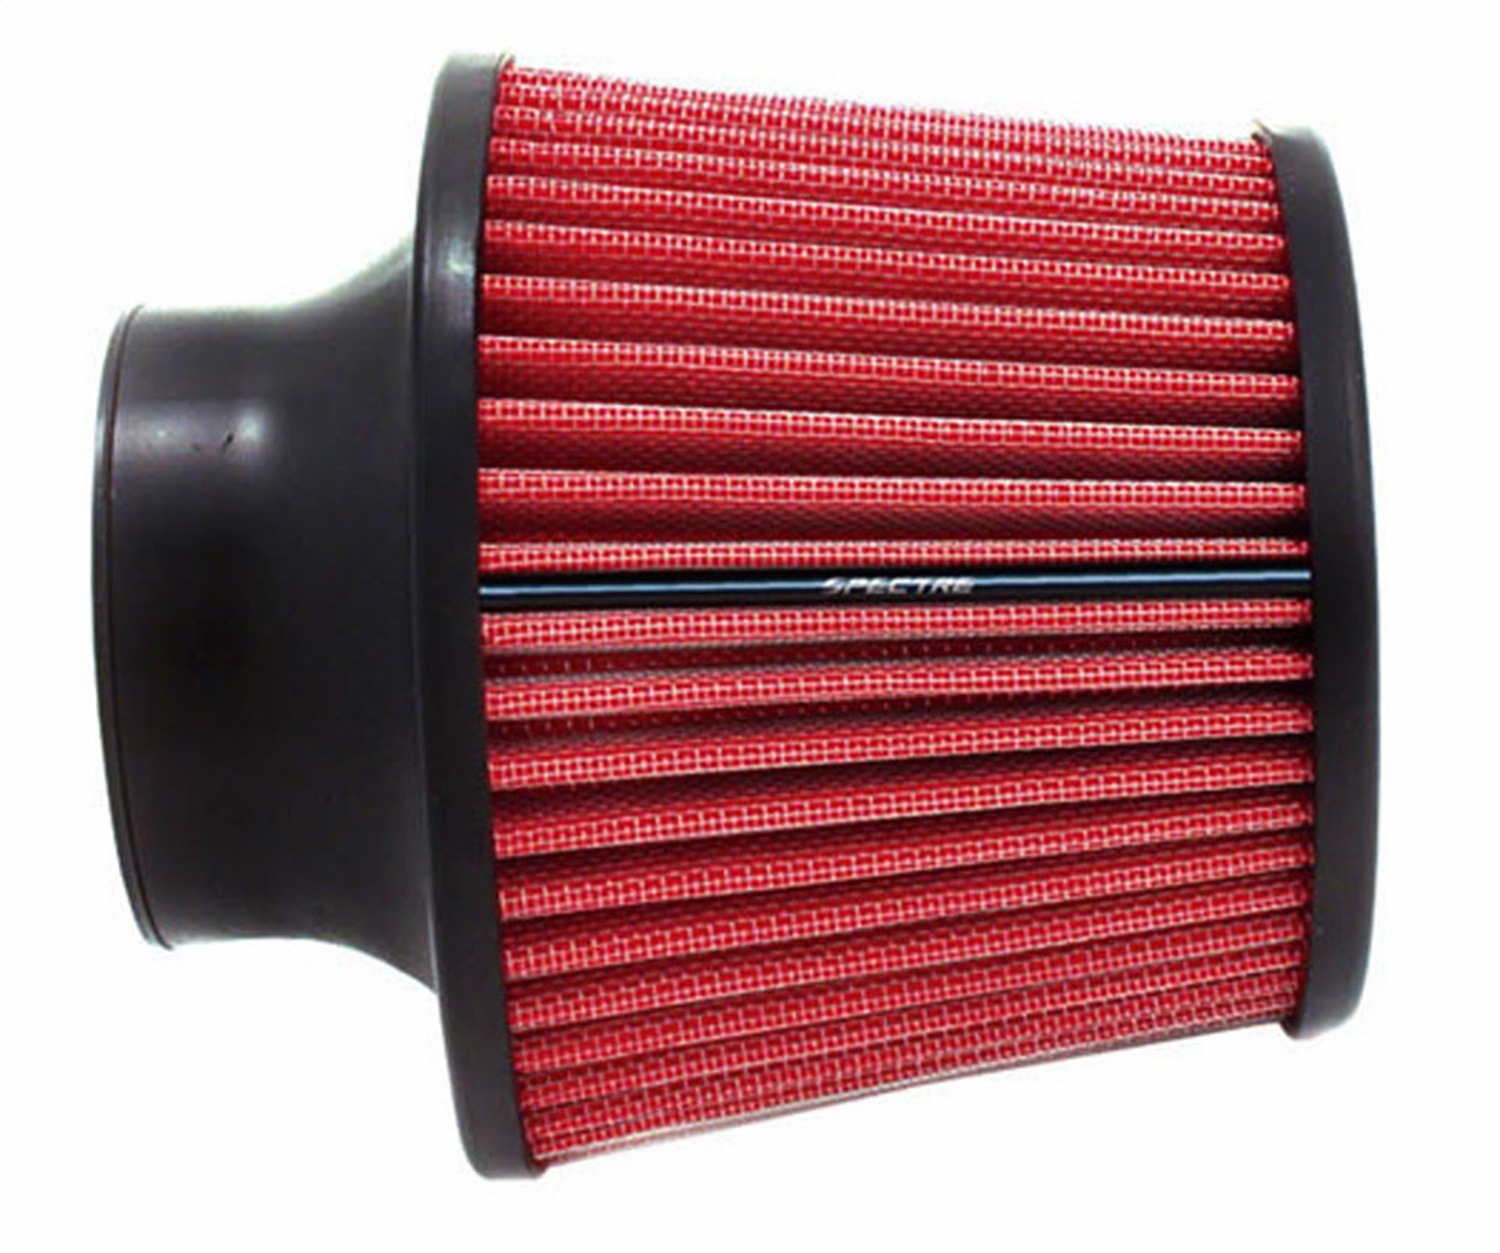 Воздушный фильтр использованный. Ona Air Filter 125 мм. 38242300 Воздушный фильтр. Фильтр автомобильный воздушный инжектор 73 мм High Flow Air Filter. Фильтр red7464.